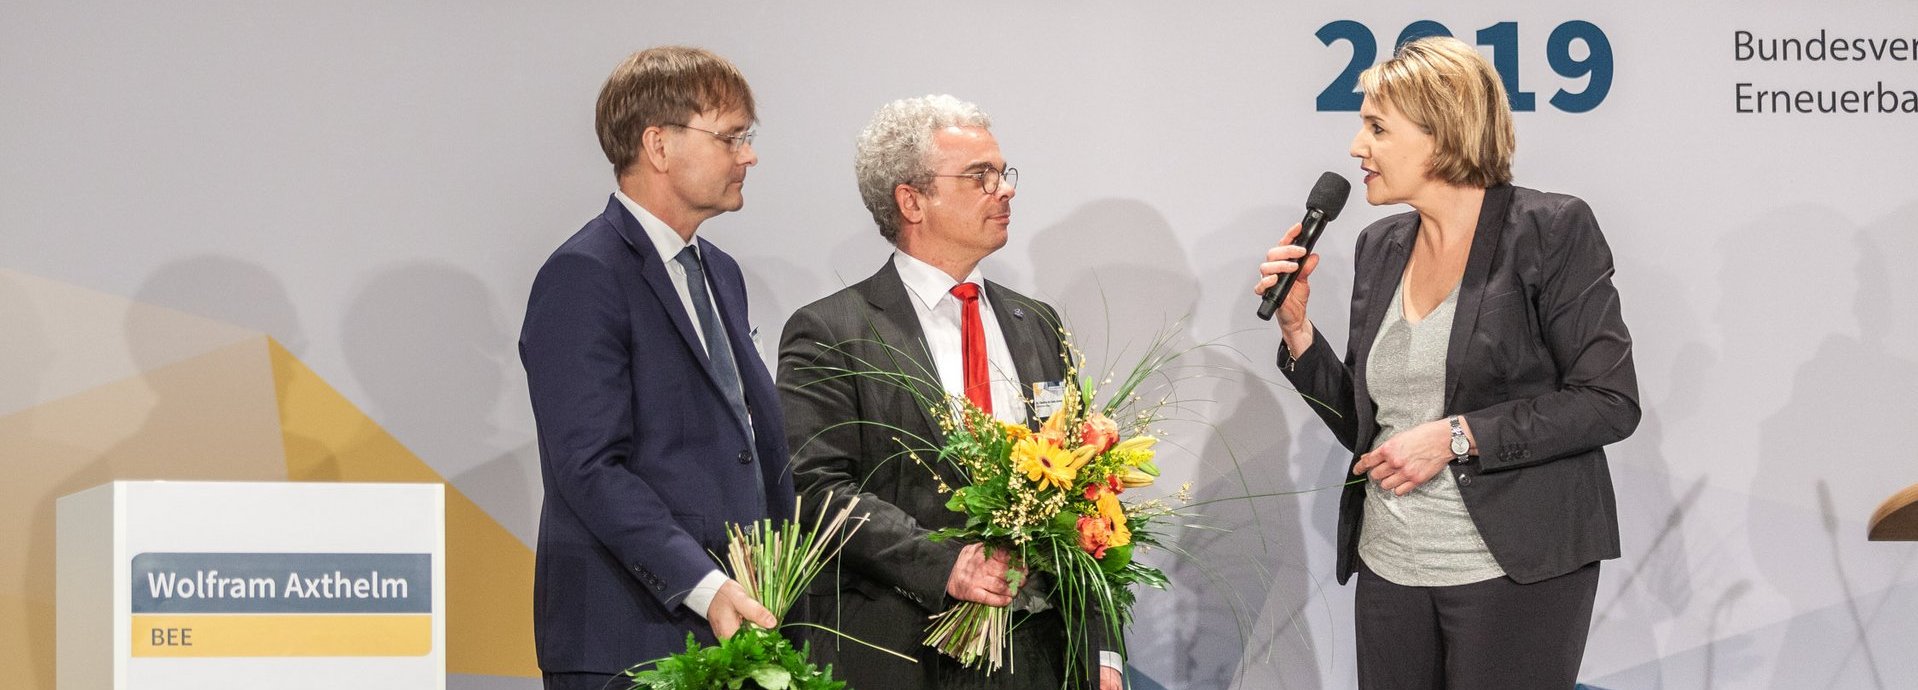 BEE Präsidentin Simone Peter spricht zu BEE Geschäftsführern Wolfram Axthelm und Claudius da Costa Gomez, die Blumensträuße in den Händen halten